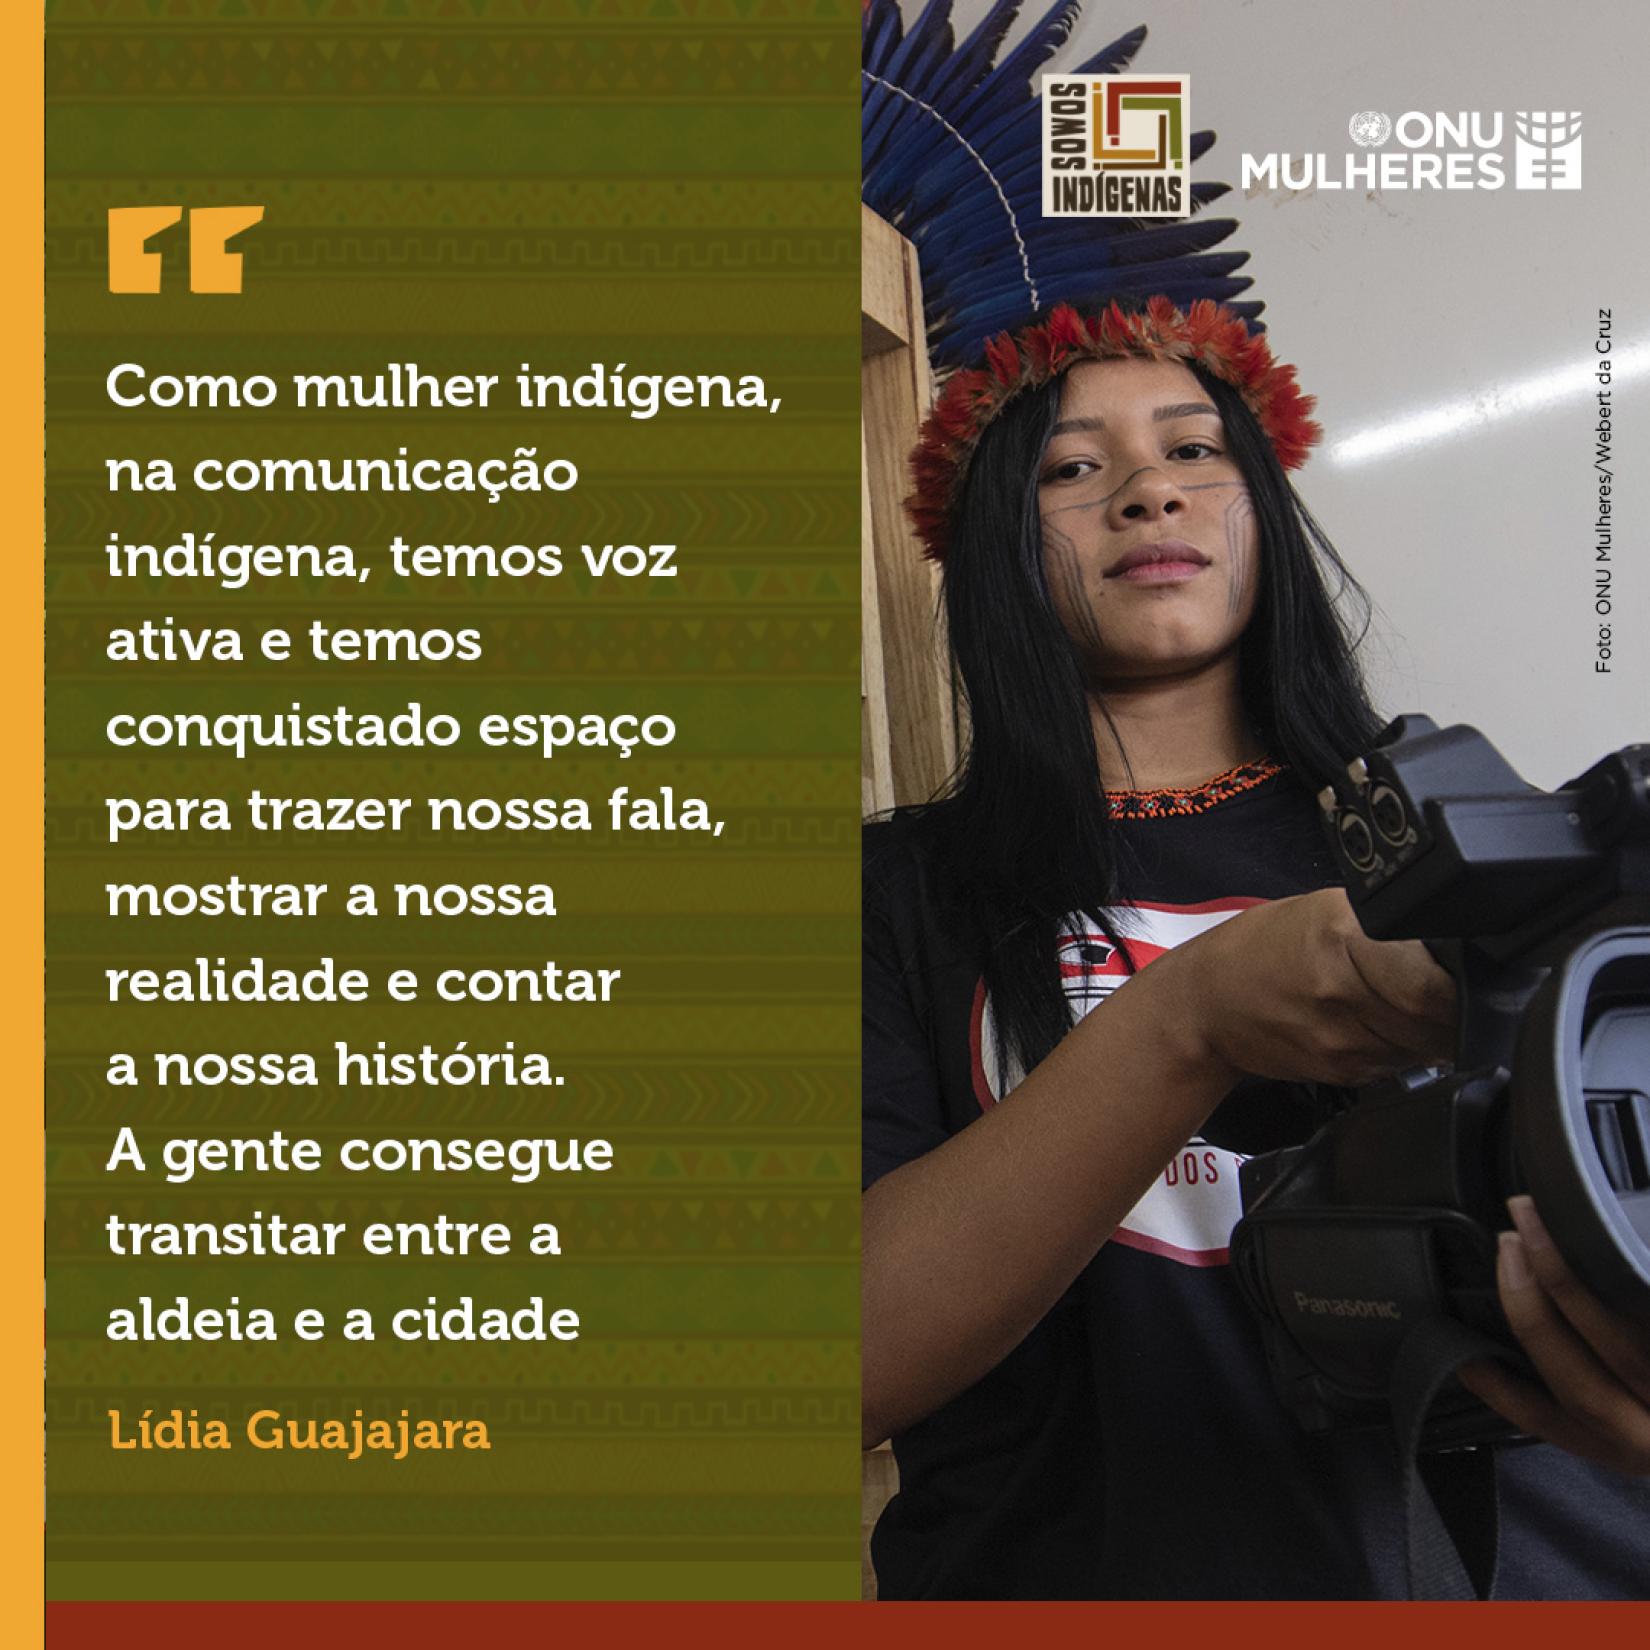 Lídia Guajajara, do coletivo Mídia Índia, faz uso das novas tecnologias e das redes sociais na contínua trajetória de mulheres indígenas na comunicação, intensificada desde a década de 1970.